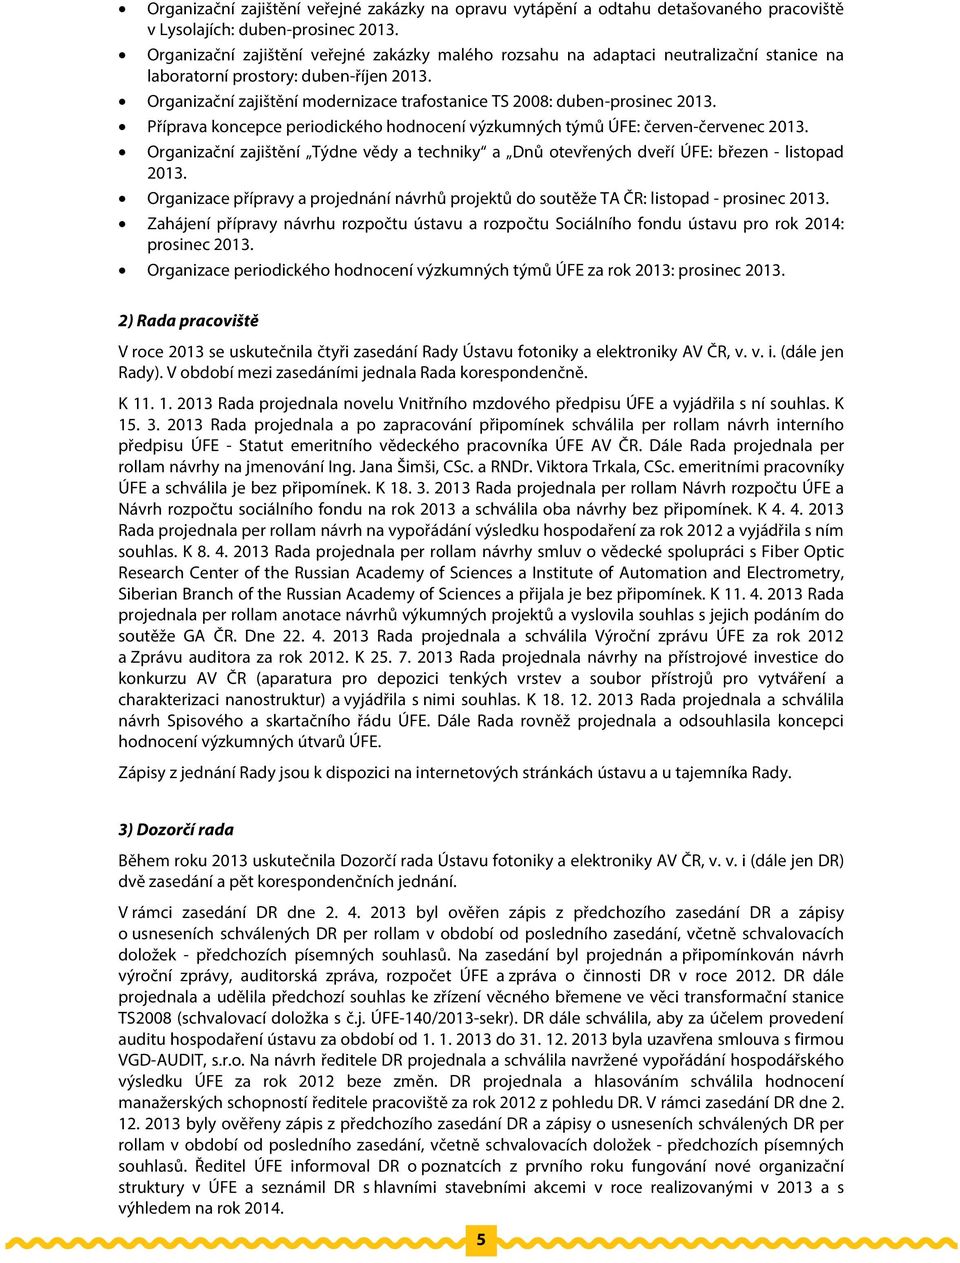 Organizační zajištění modernizace trafostanice TS 2008: duben-prosinec 2013. Příprava koncepce periodického hodnocení výzkumných týmů ÚFE: červen-červenec 2013.